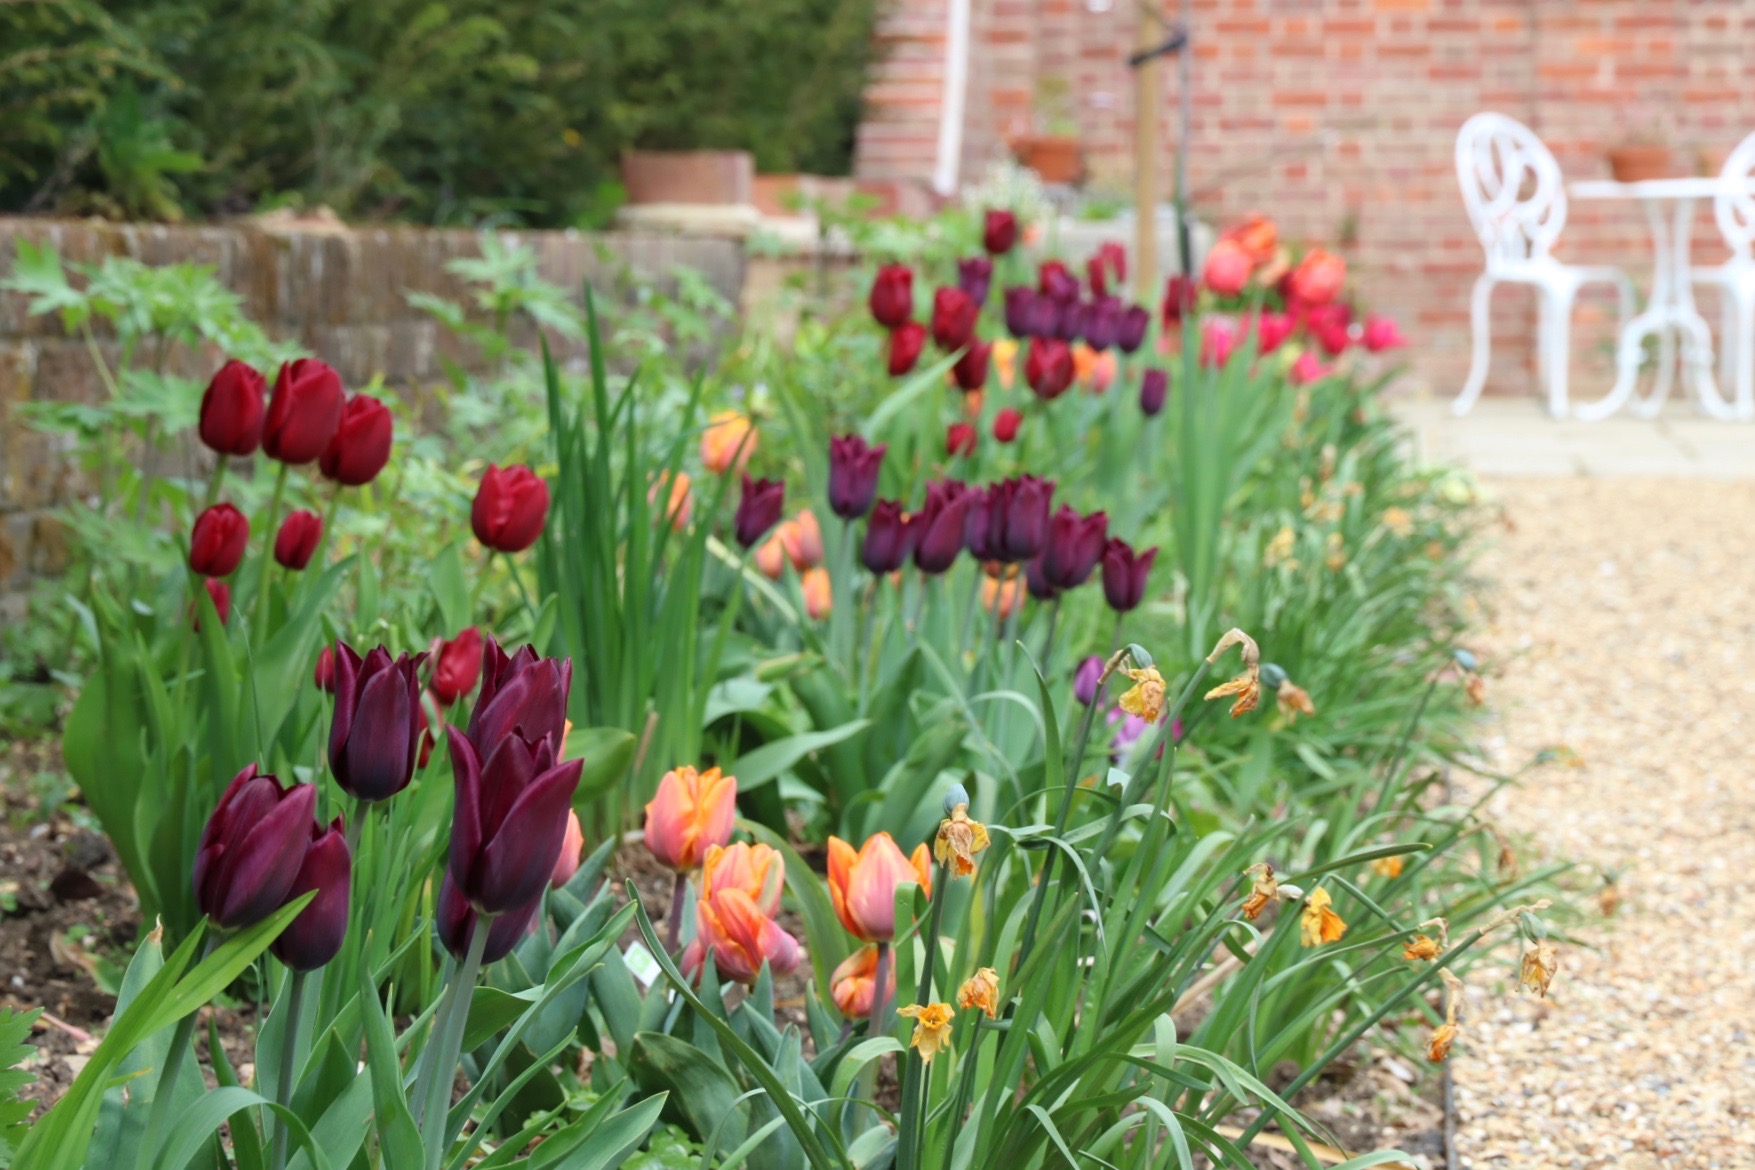 Tulips in a garden border